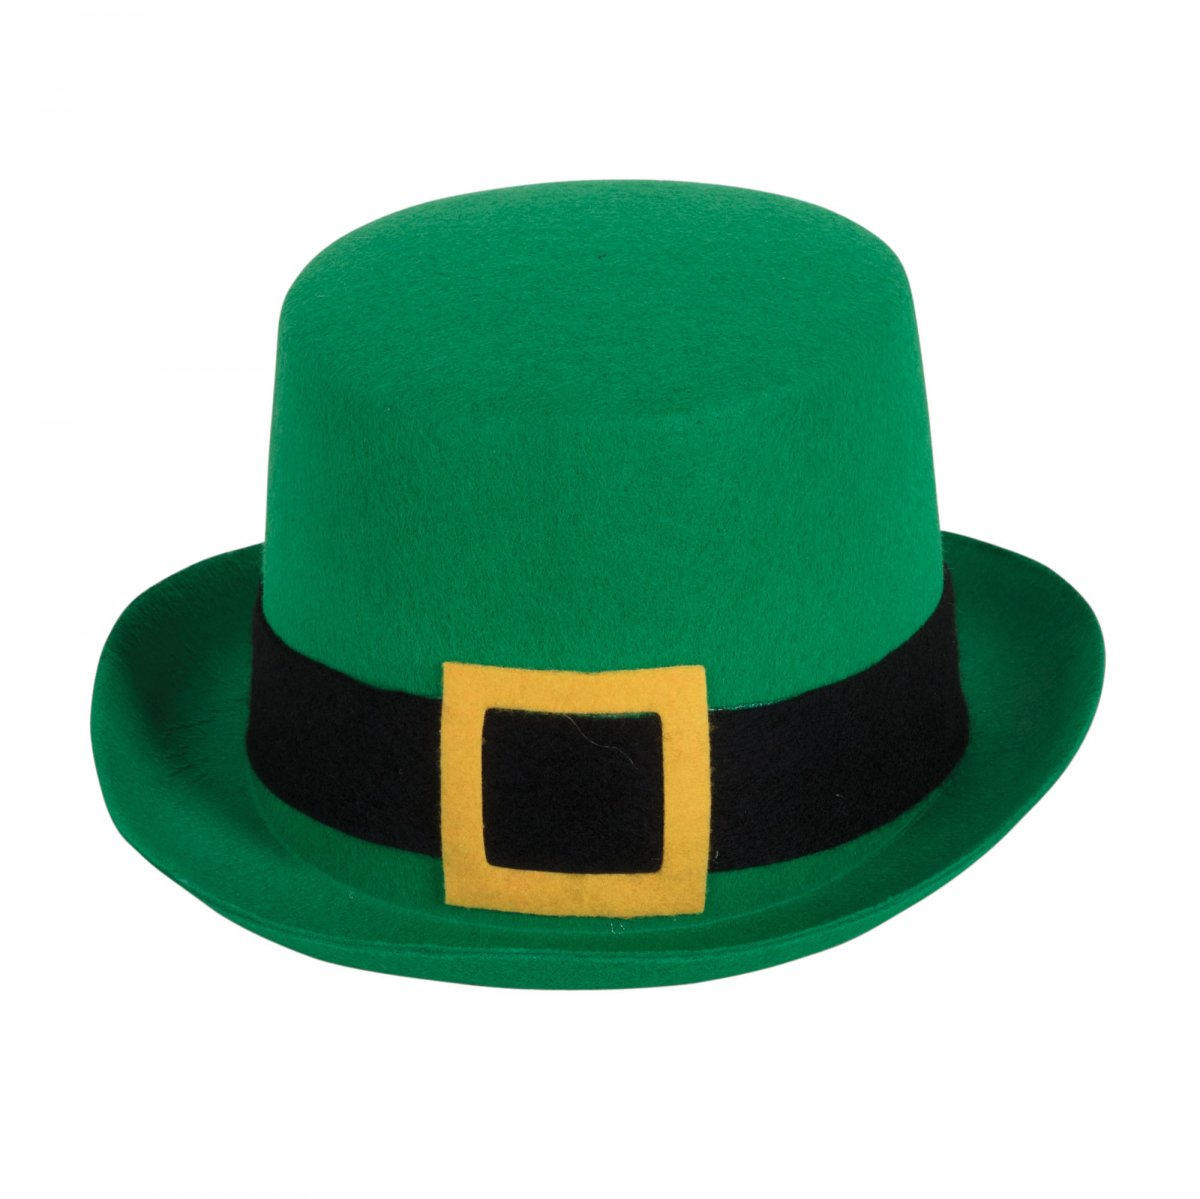 St.Patricks day høj hat | Køb hatte til Patriksday